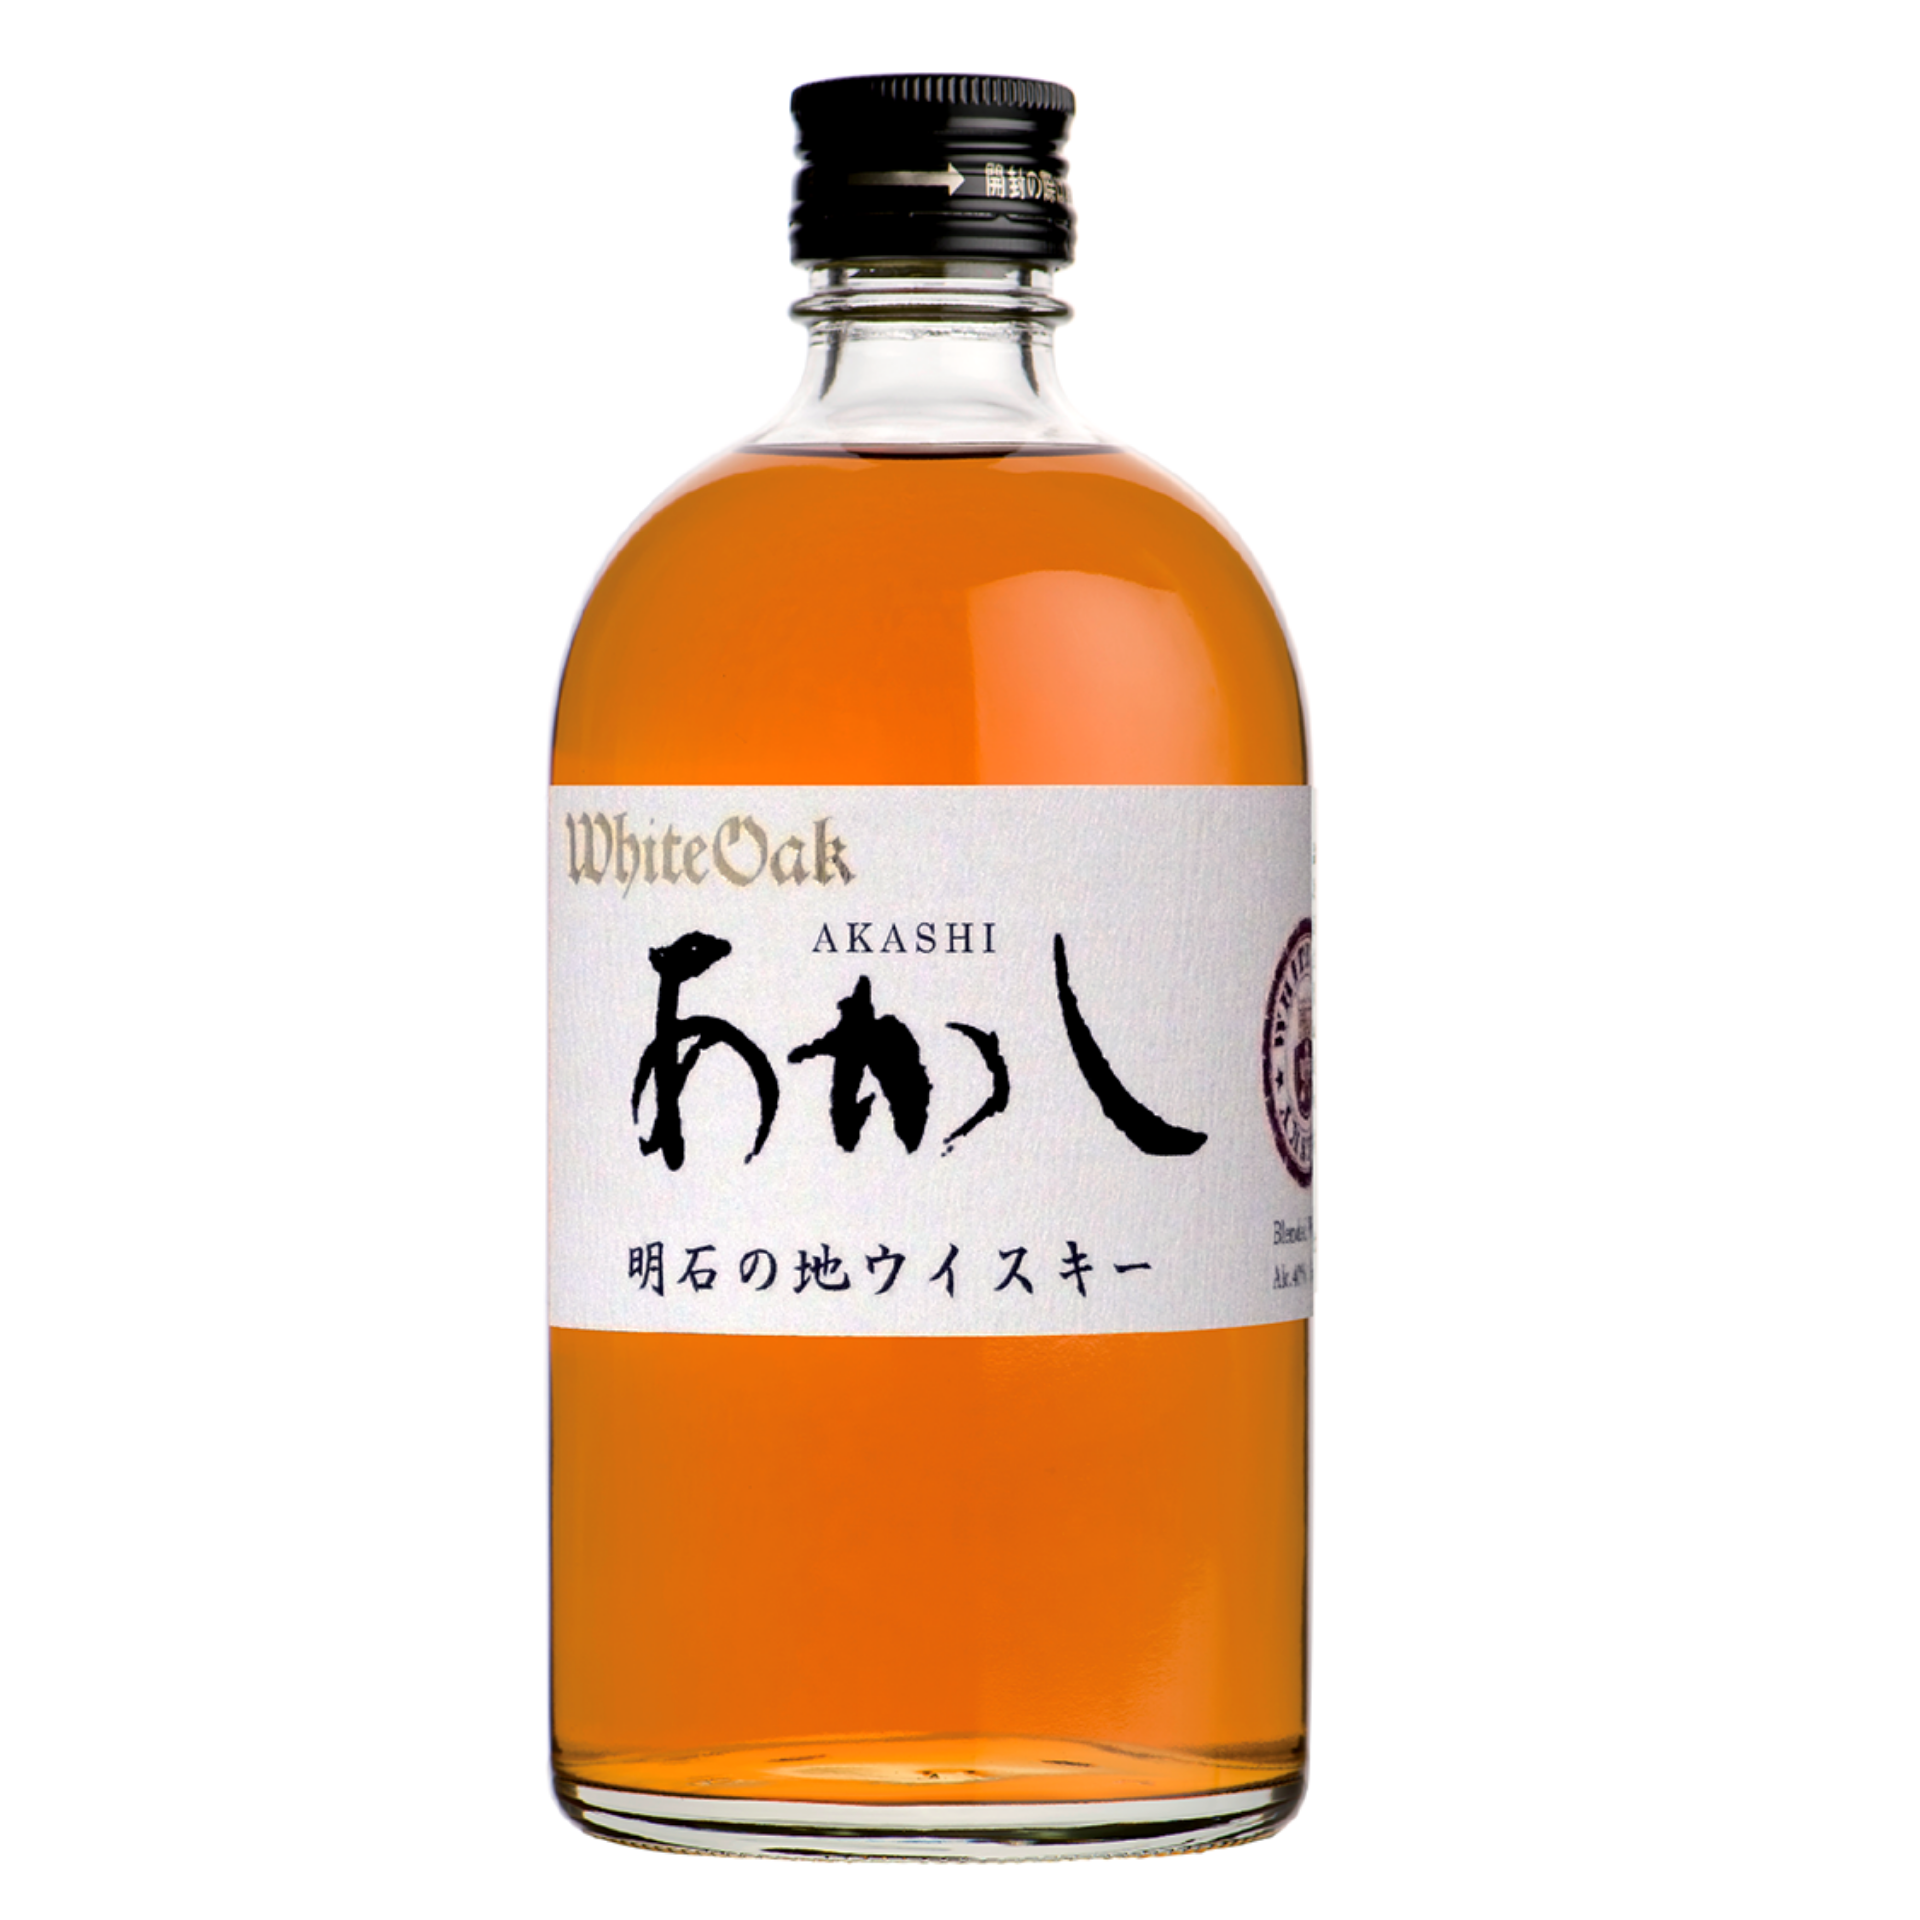 Akashi White Oak Blended Whisky 500ml